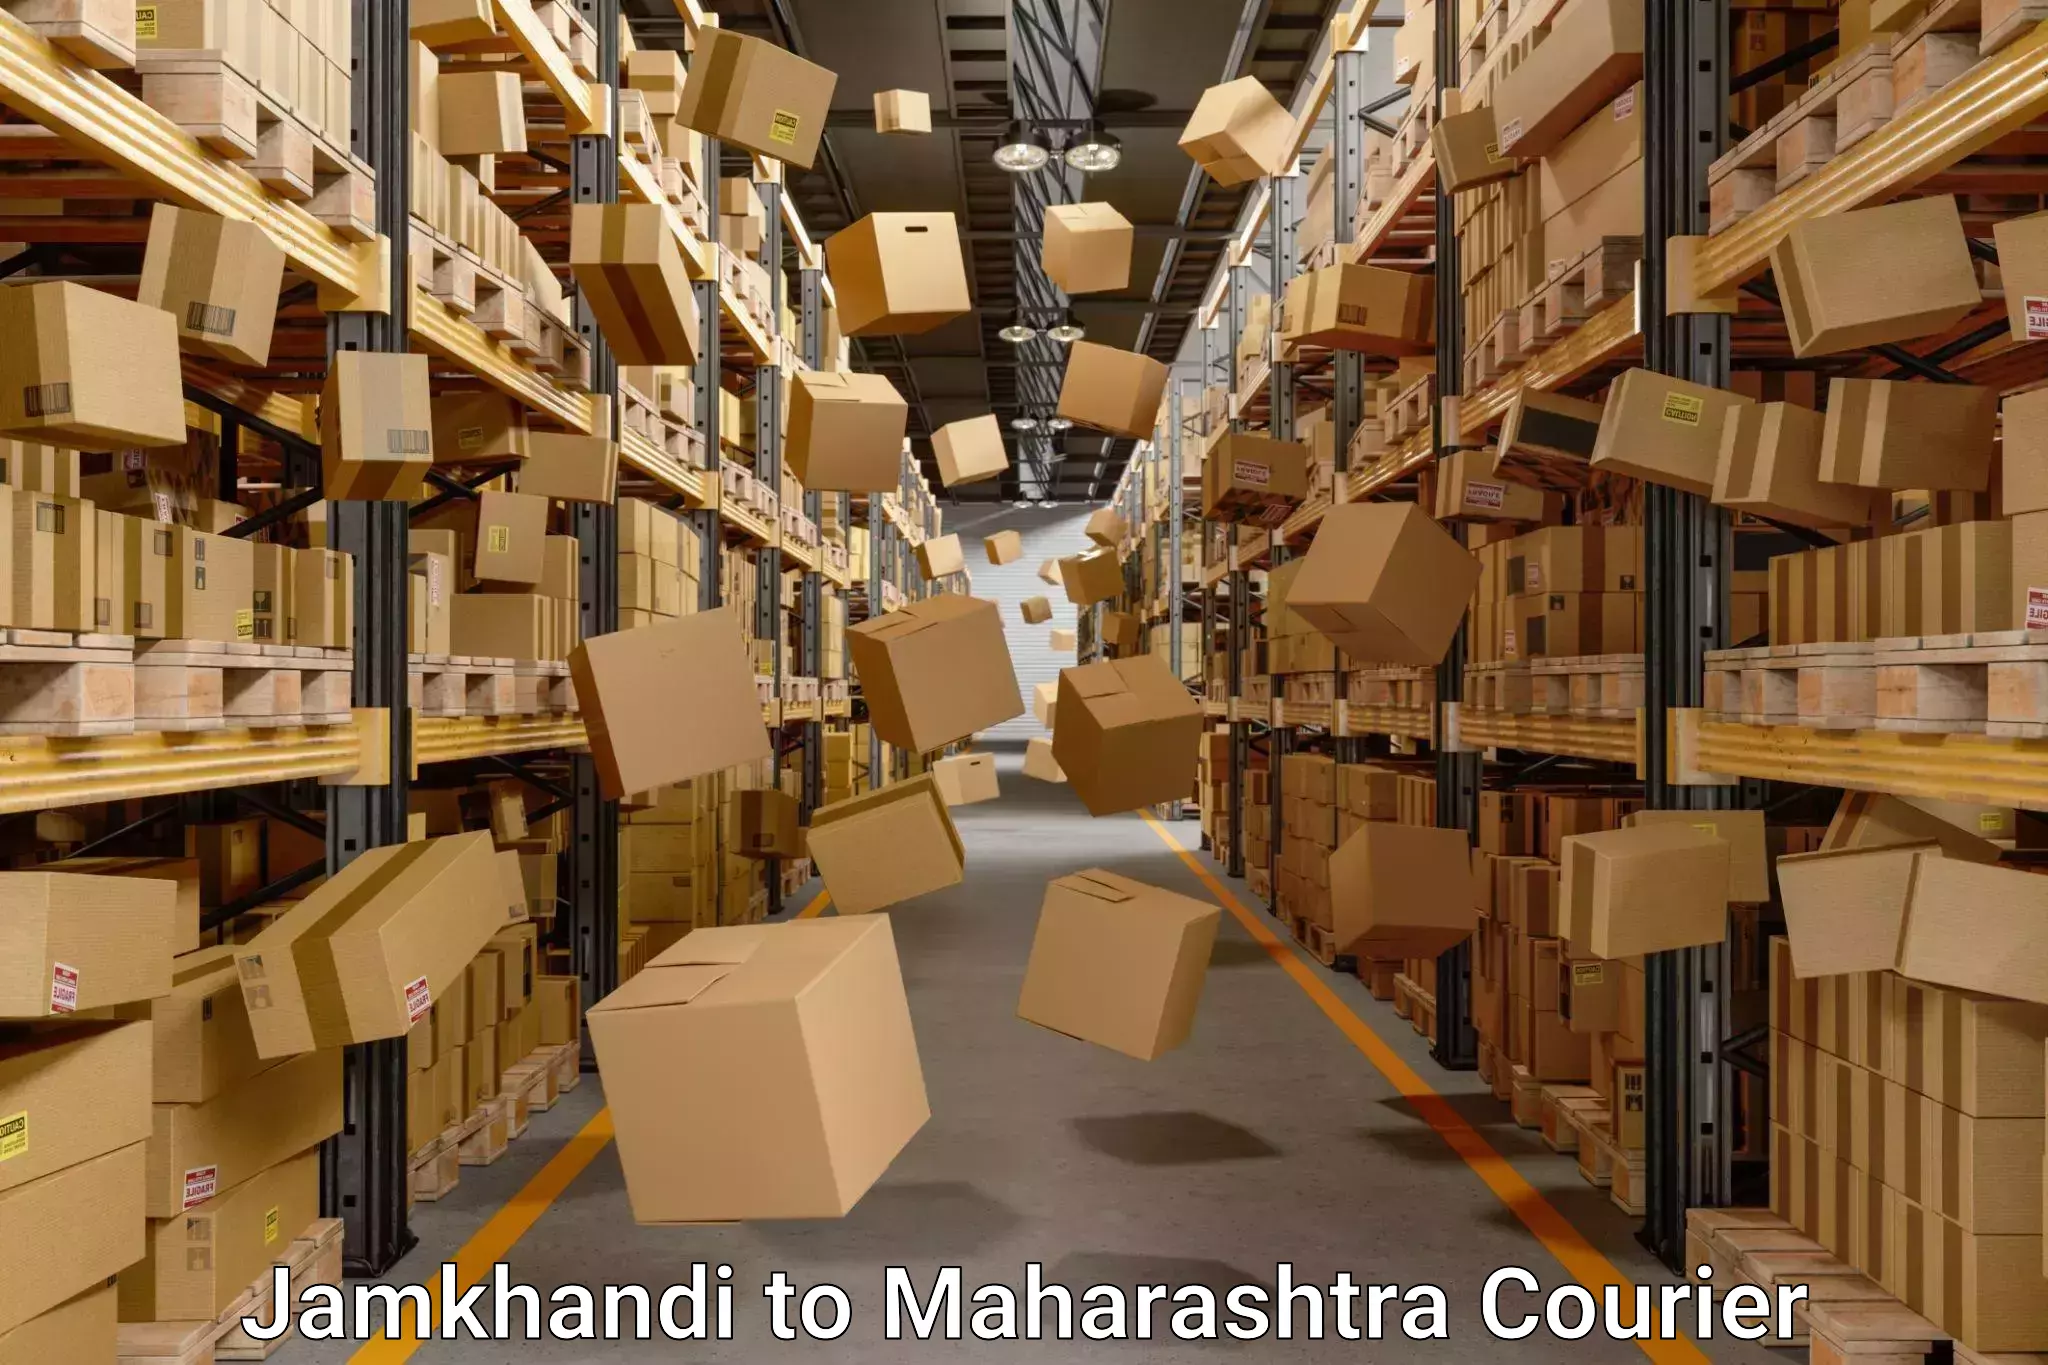 Household moving experts Jamkhandi to Maharashtra